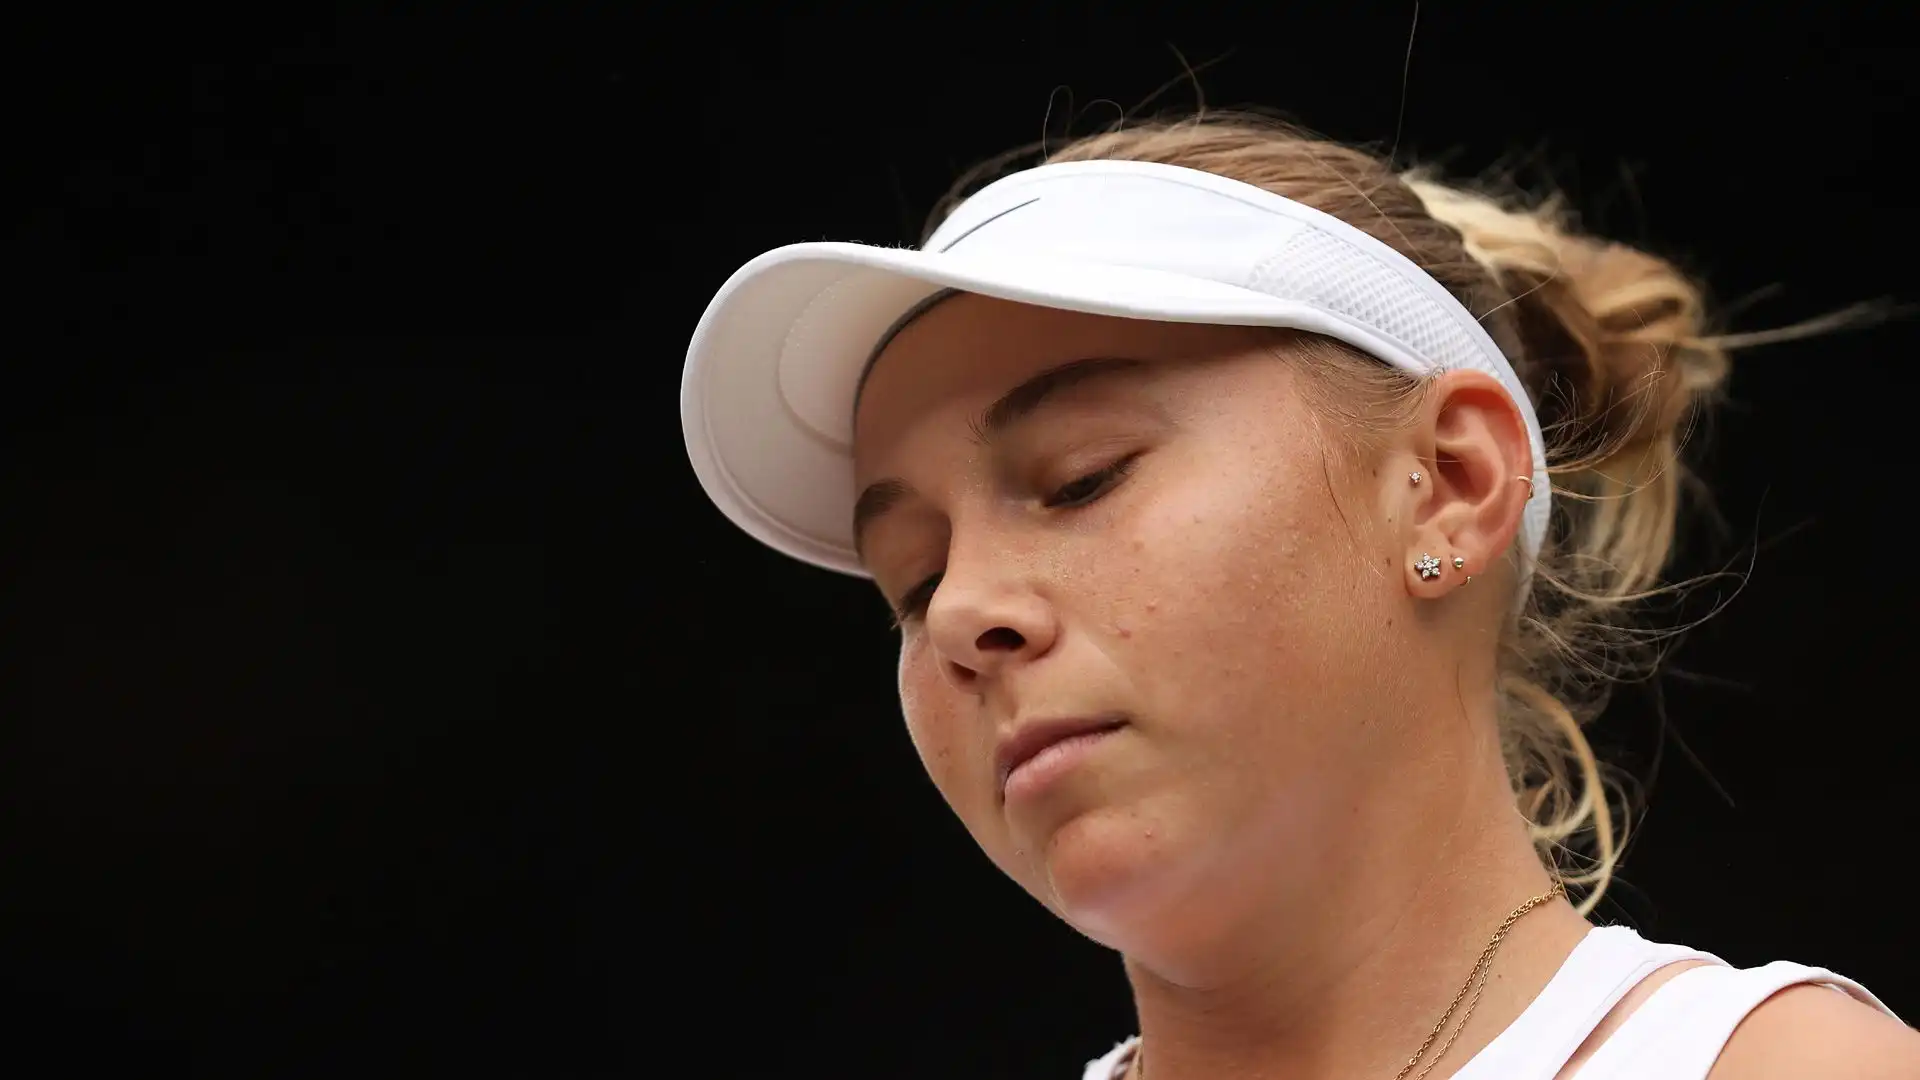 Ora la tennista prodigio, semifinalista al Roland Garros nel 2019 a soli 17 anni, è tornata